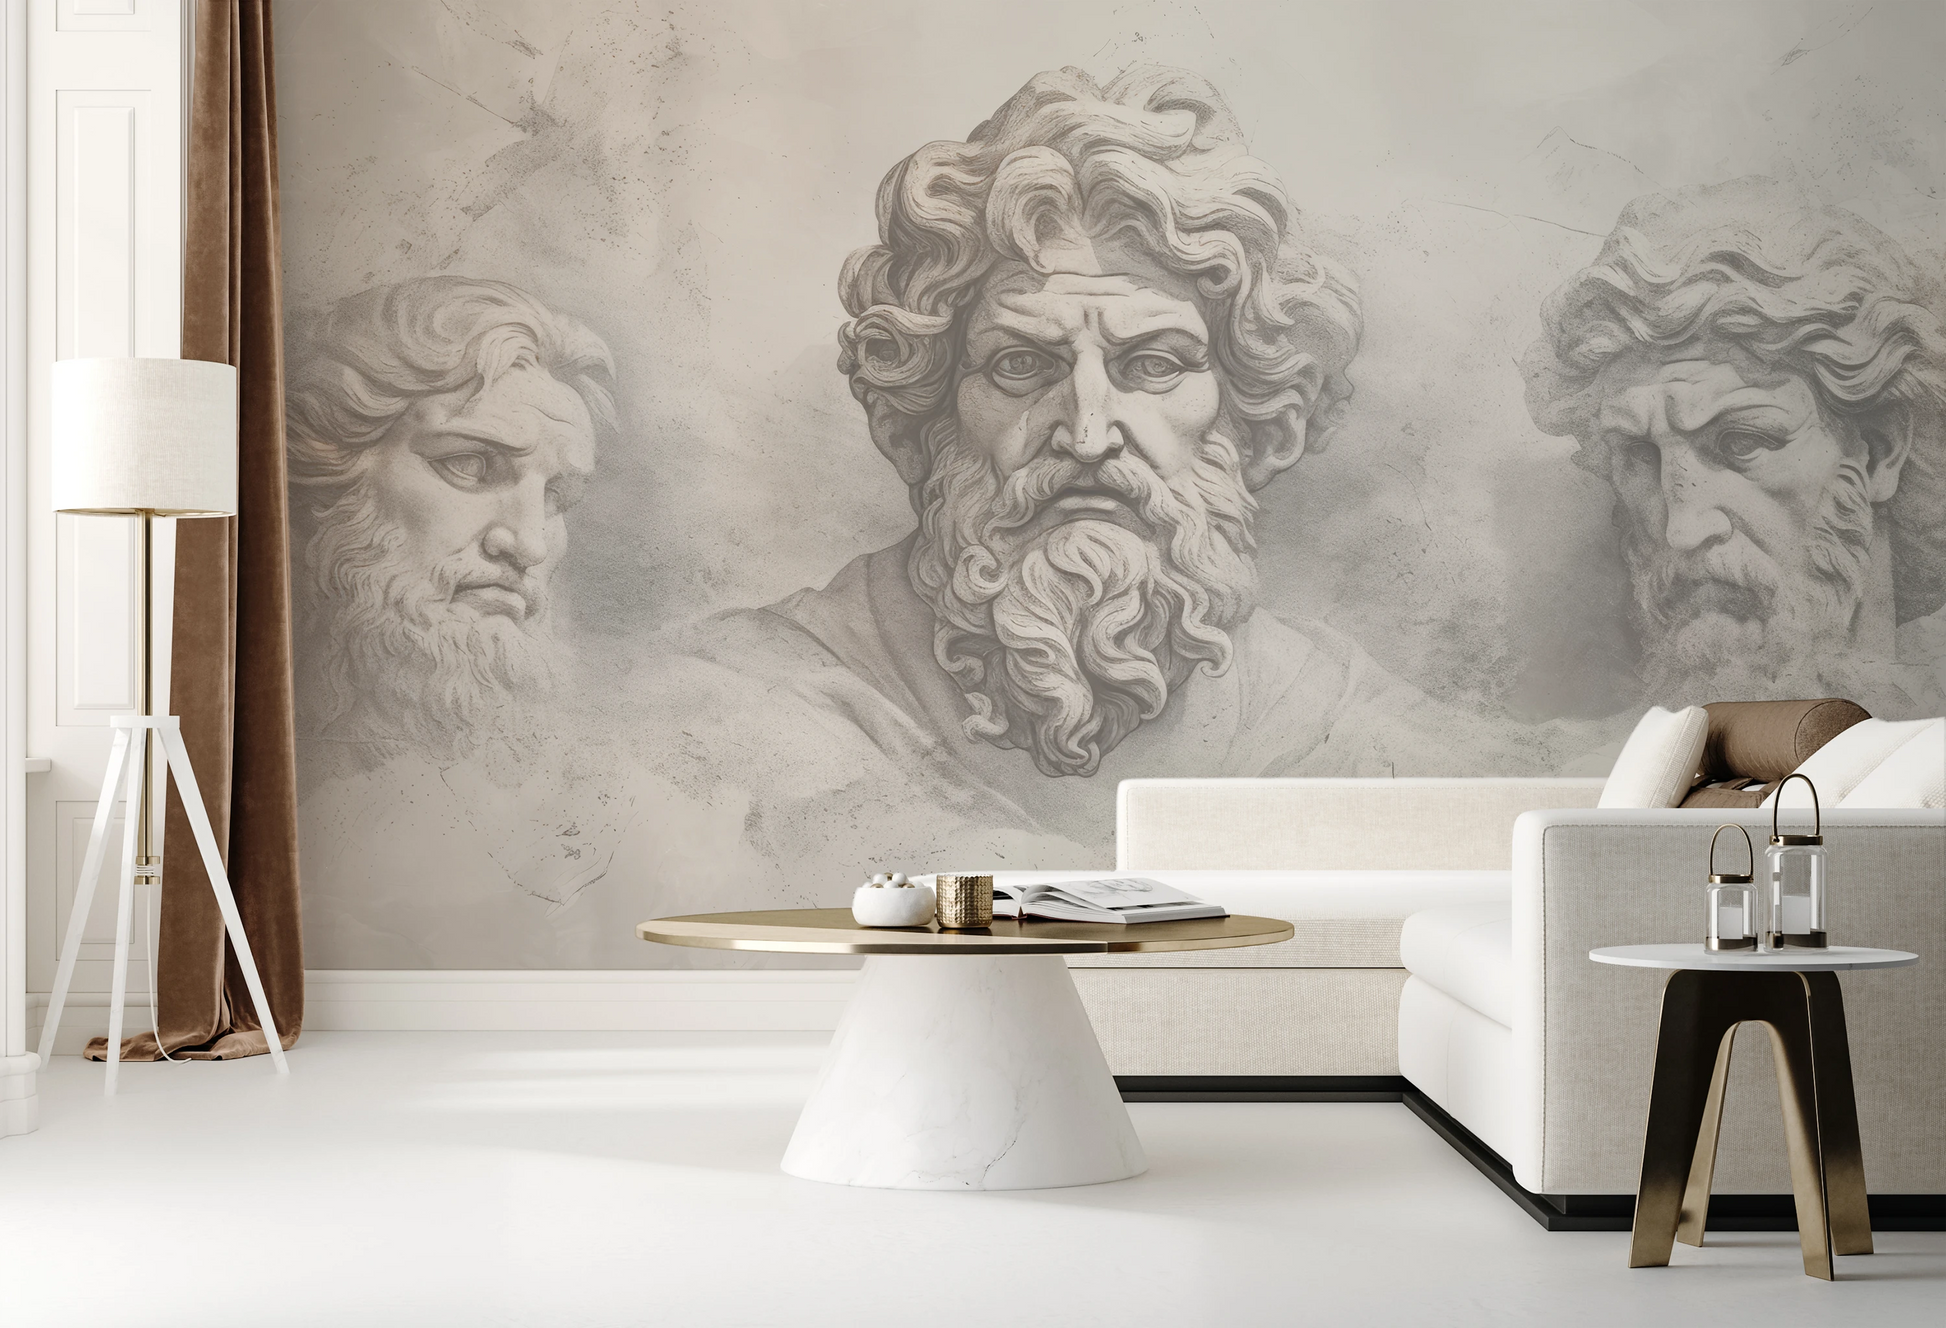 Fototapeta artystyczna o nazwie Epicurus's Legacy pokazana w aranżacji wnętrza.